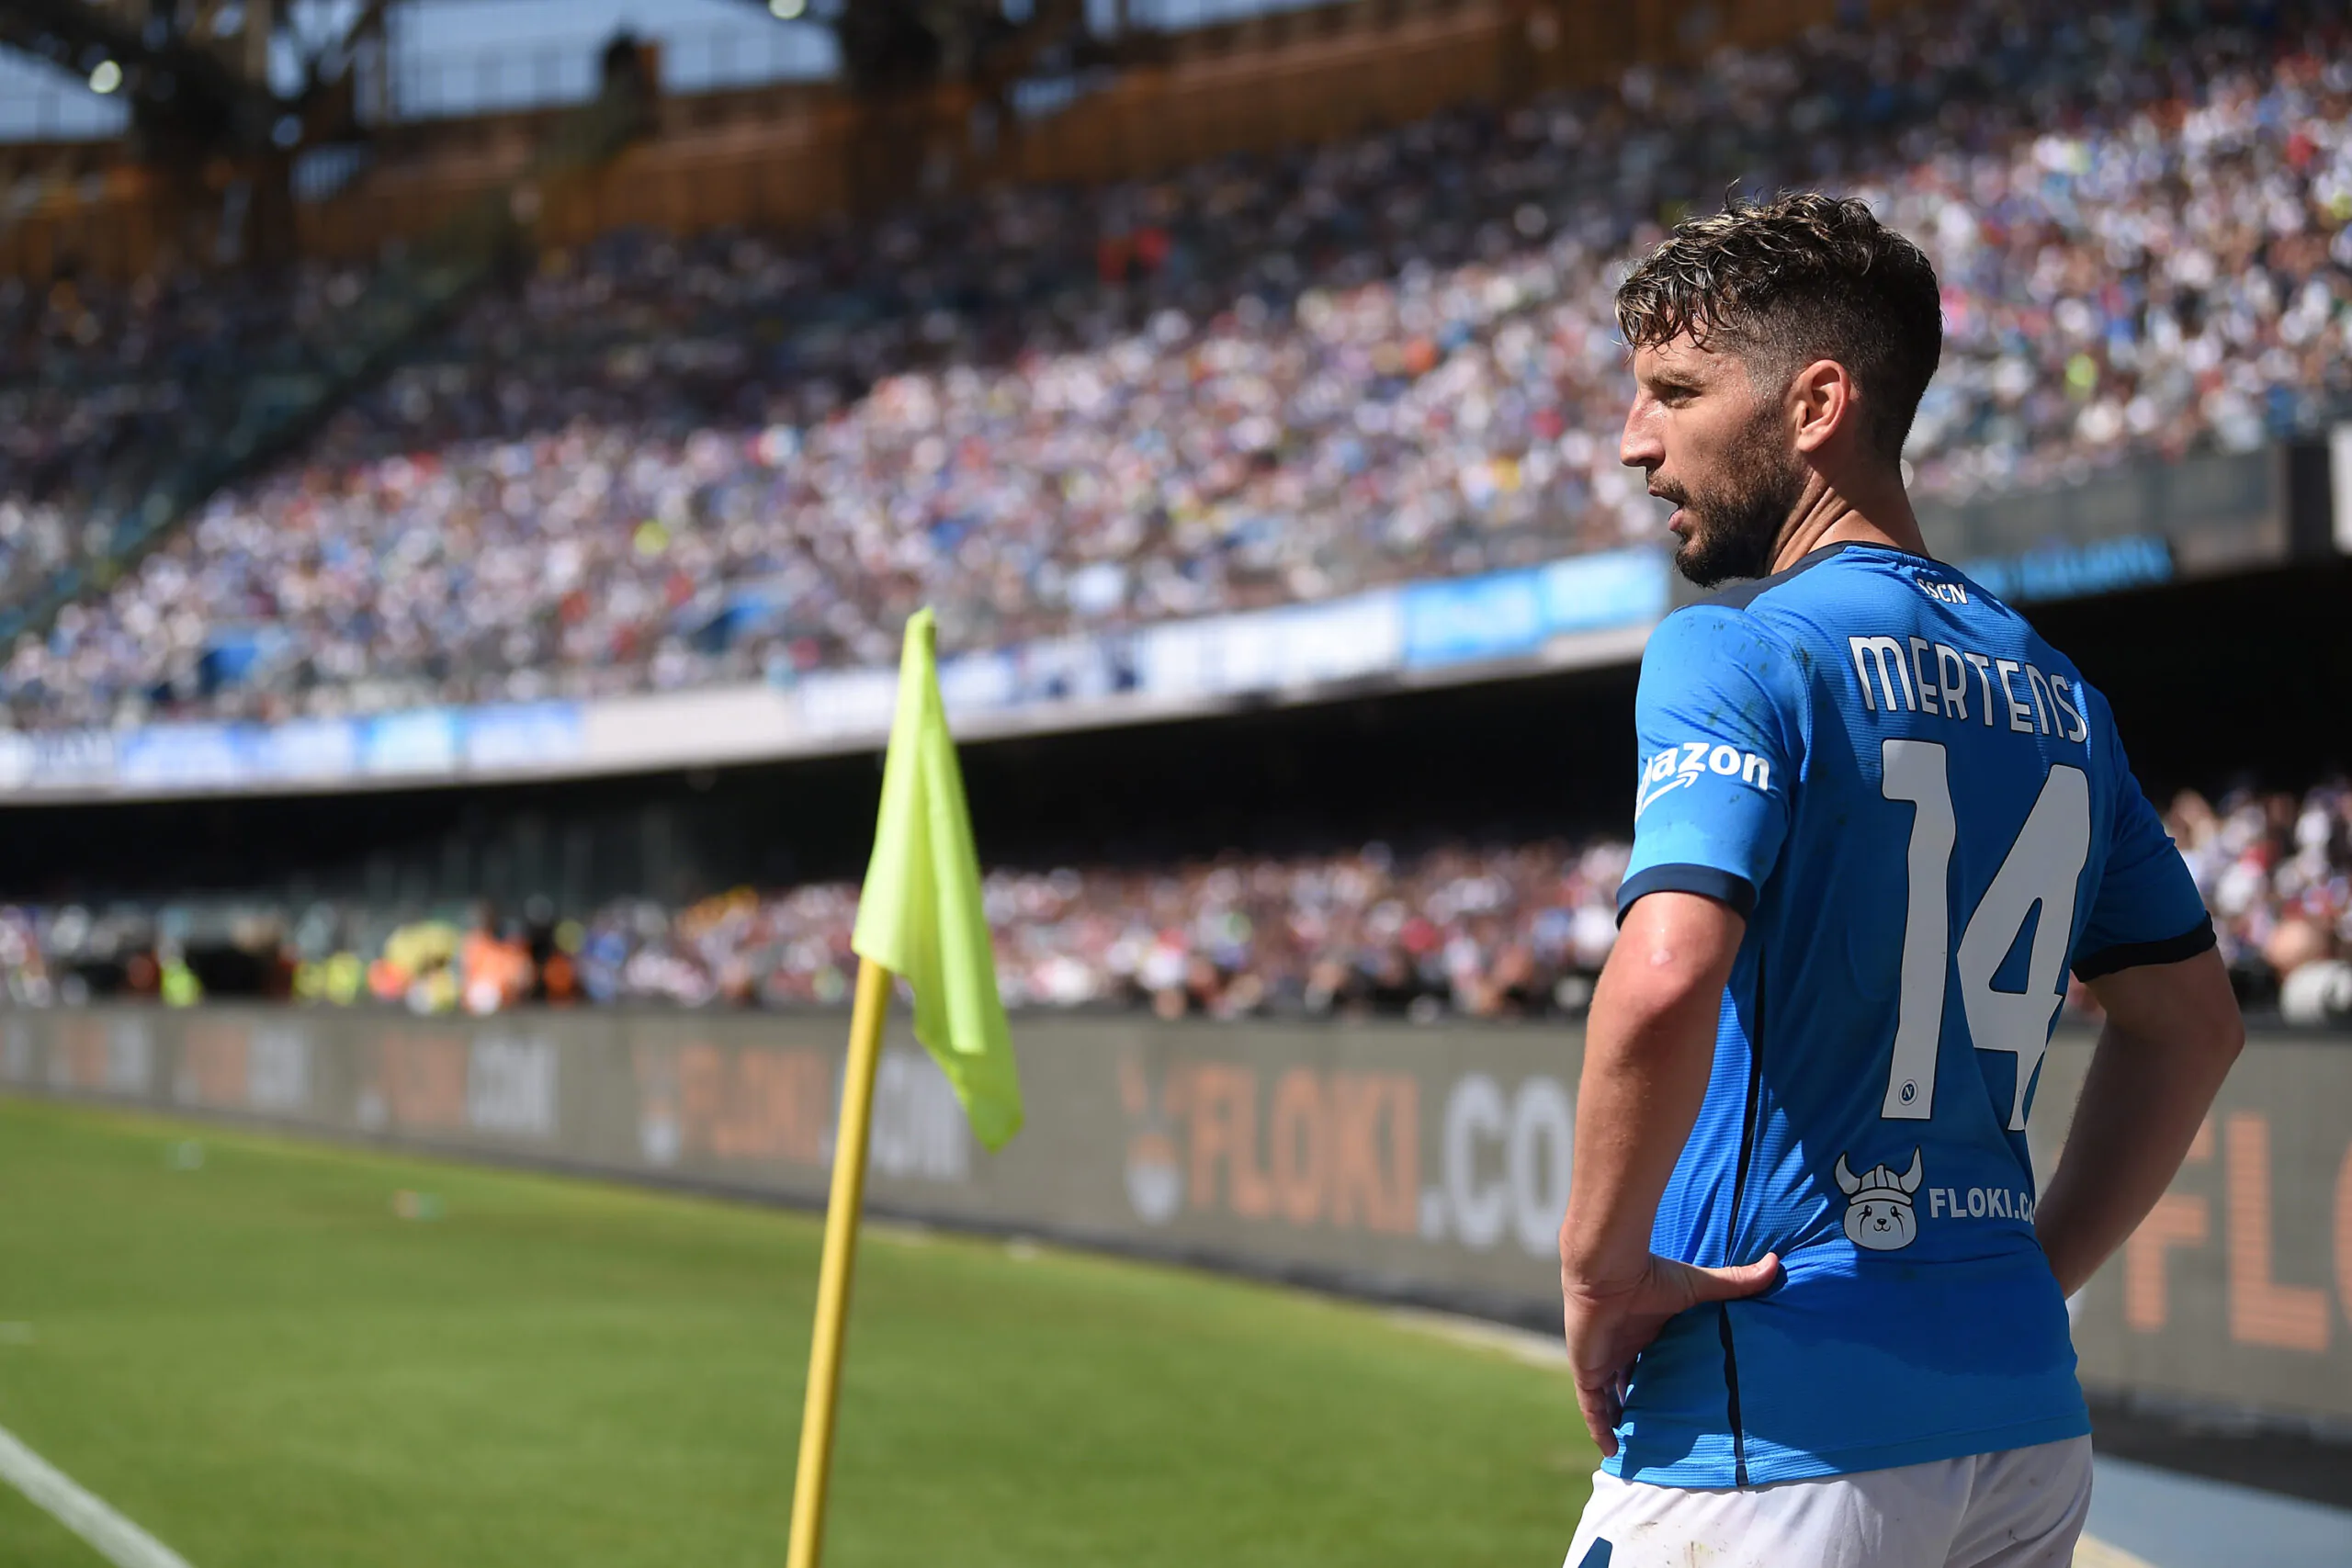 Mertens lontano da Napoli: per lui l’offerta di un club di Serie A!